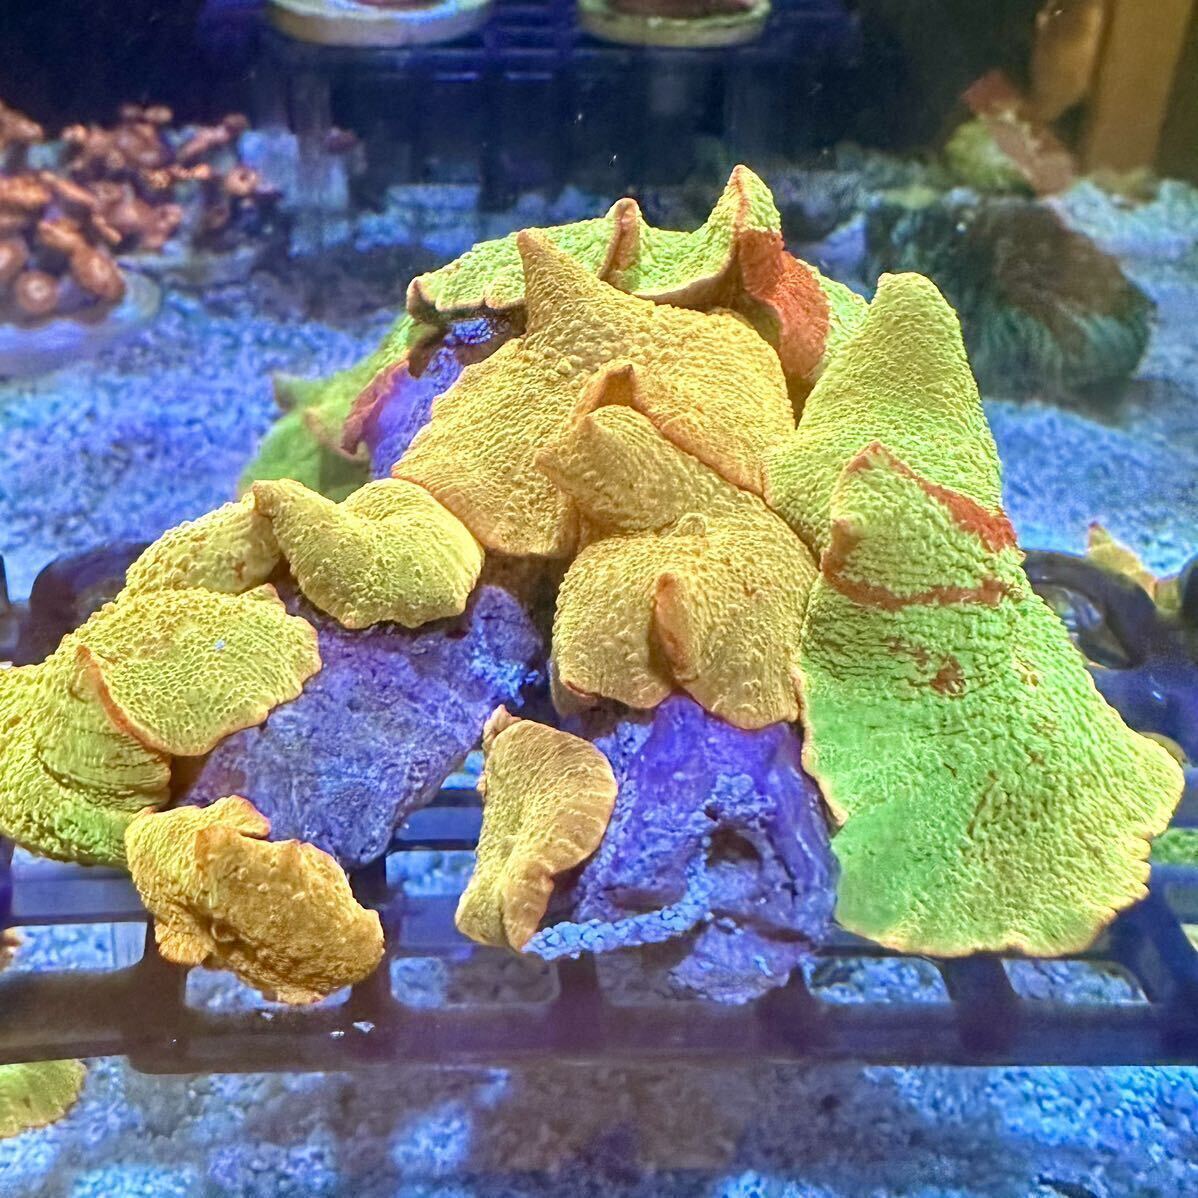 ジョーブレーカー サンゴ ディスクコーラル アクアリウムの画像1